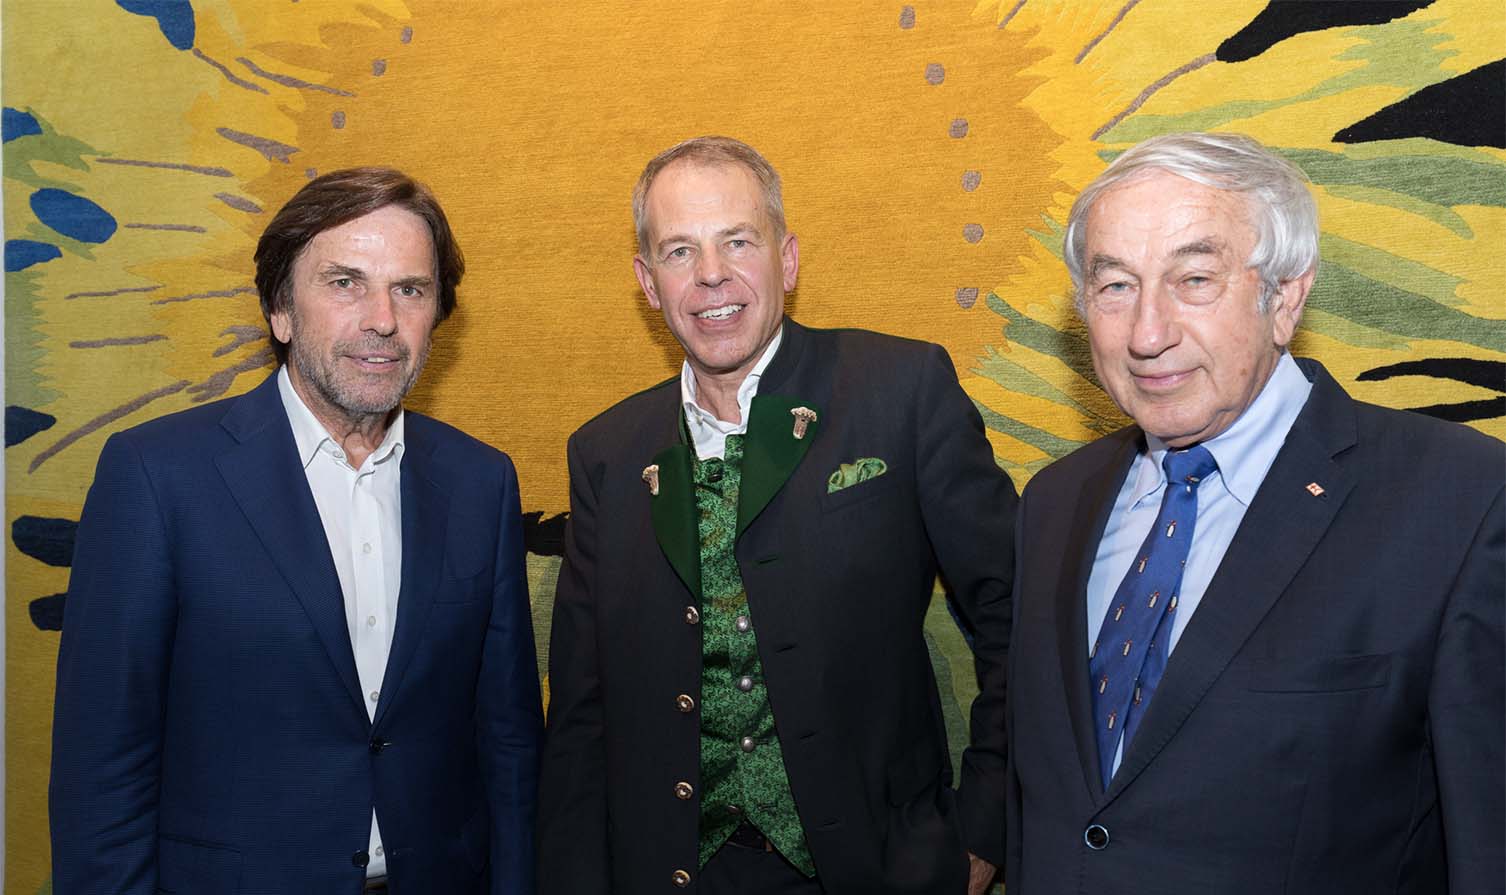 Franz Voves, Harald Geba und Gerald Schöpf posieren gemeinsam vor Teppichdesign "Kiwi" für ein gemeinsames Foto bei der Verleihung des Steirischen Landeswappens - Geba Teppich